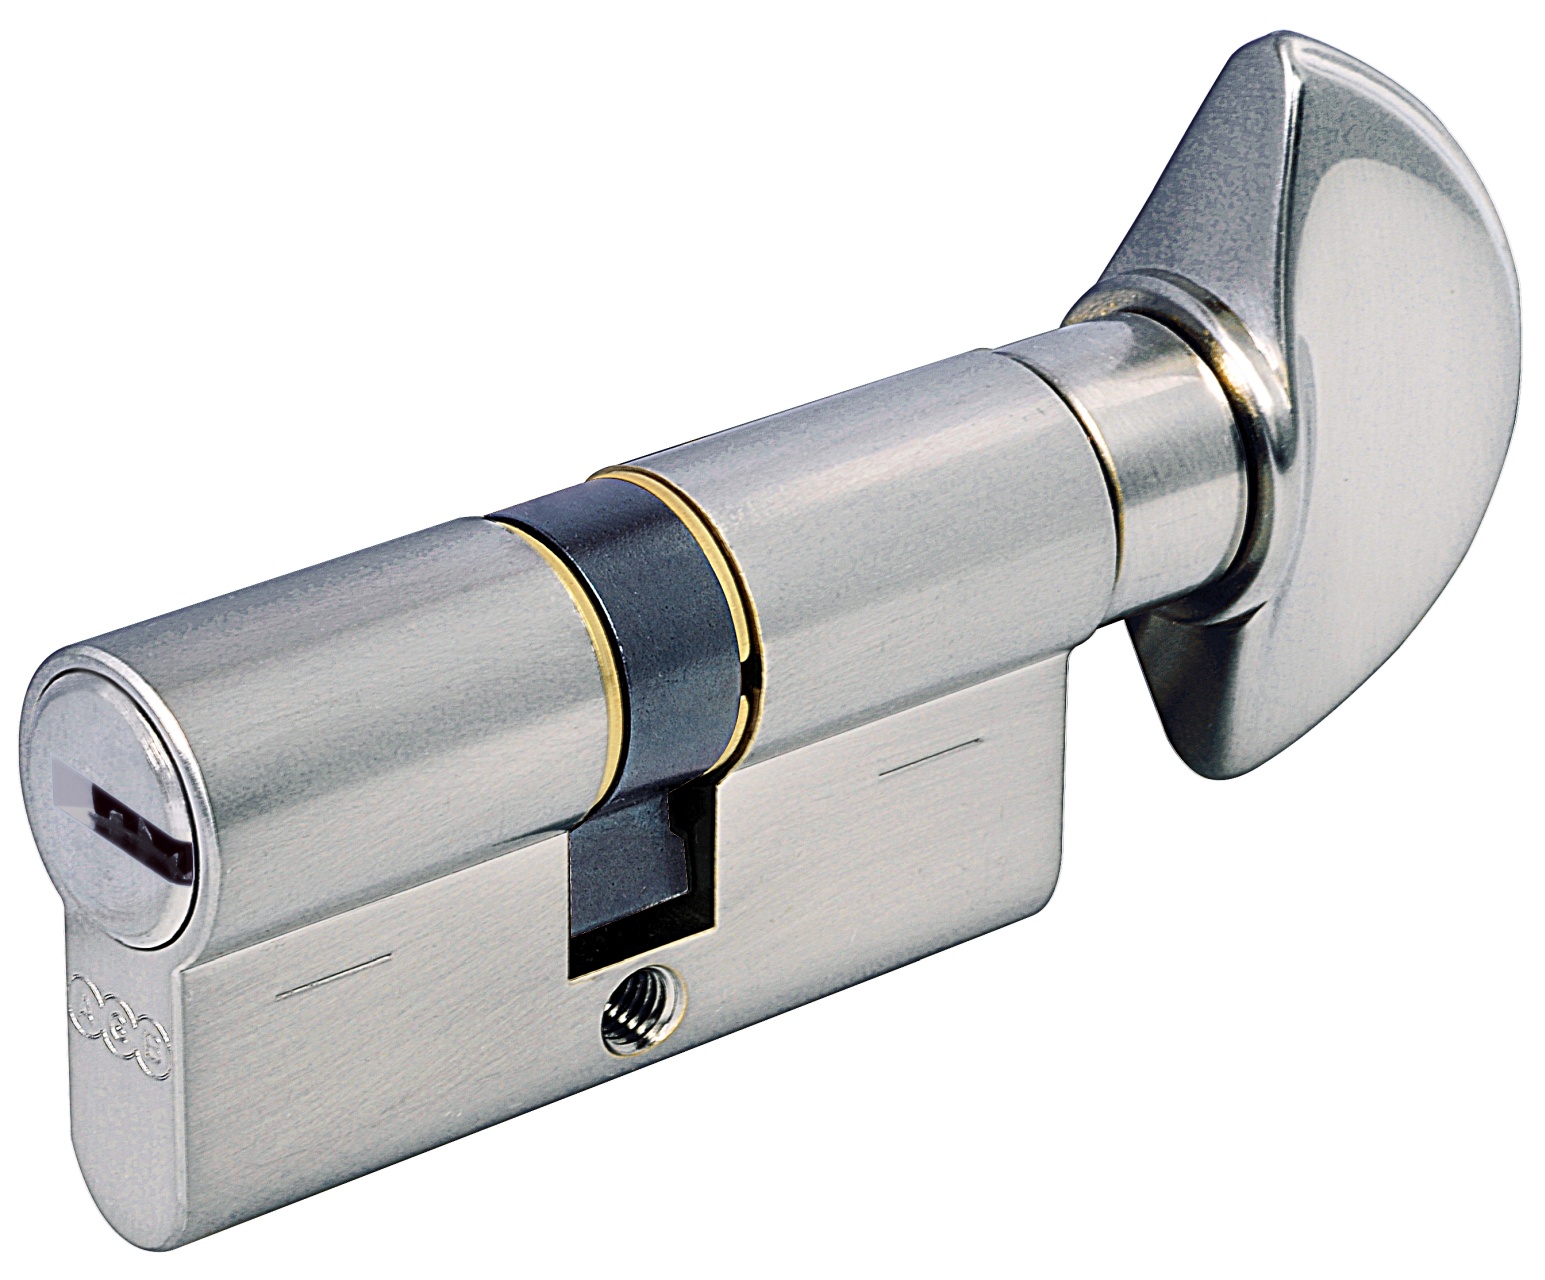 AGB -  Cilindro SCUDO 5000 PS frizionato anti bamping con chiave e pomolo - col. LUCIDO VERNICIATO - lunghezza 90 - misura P-45-10-35